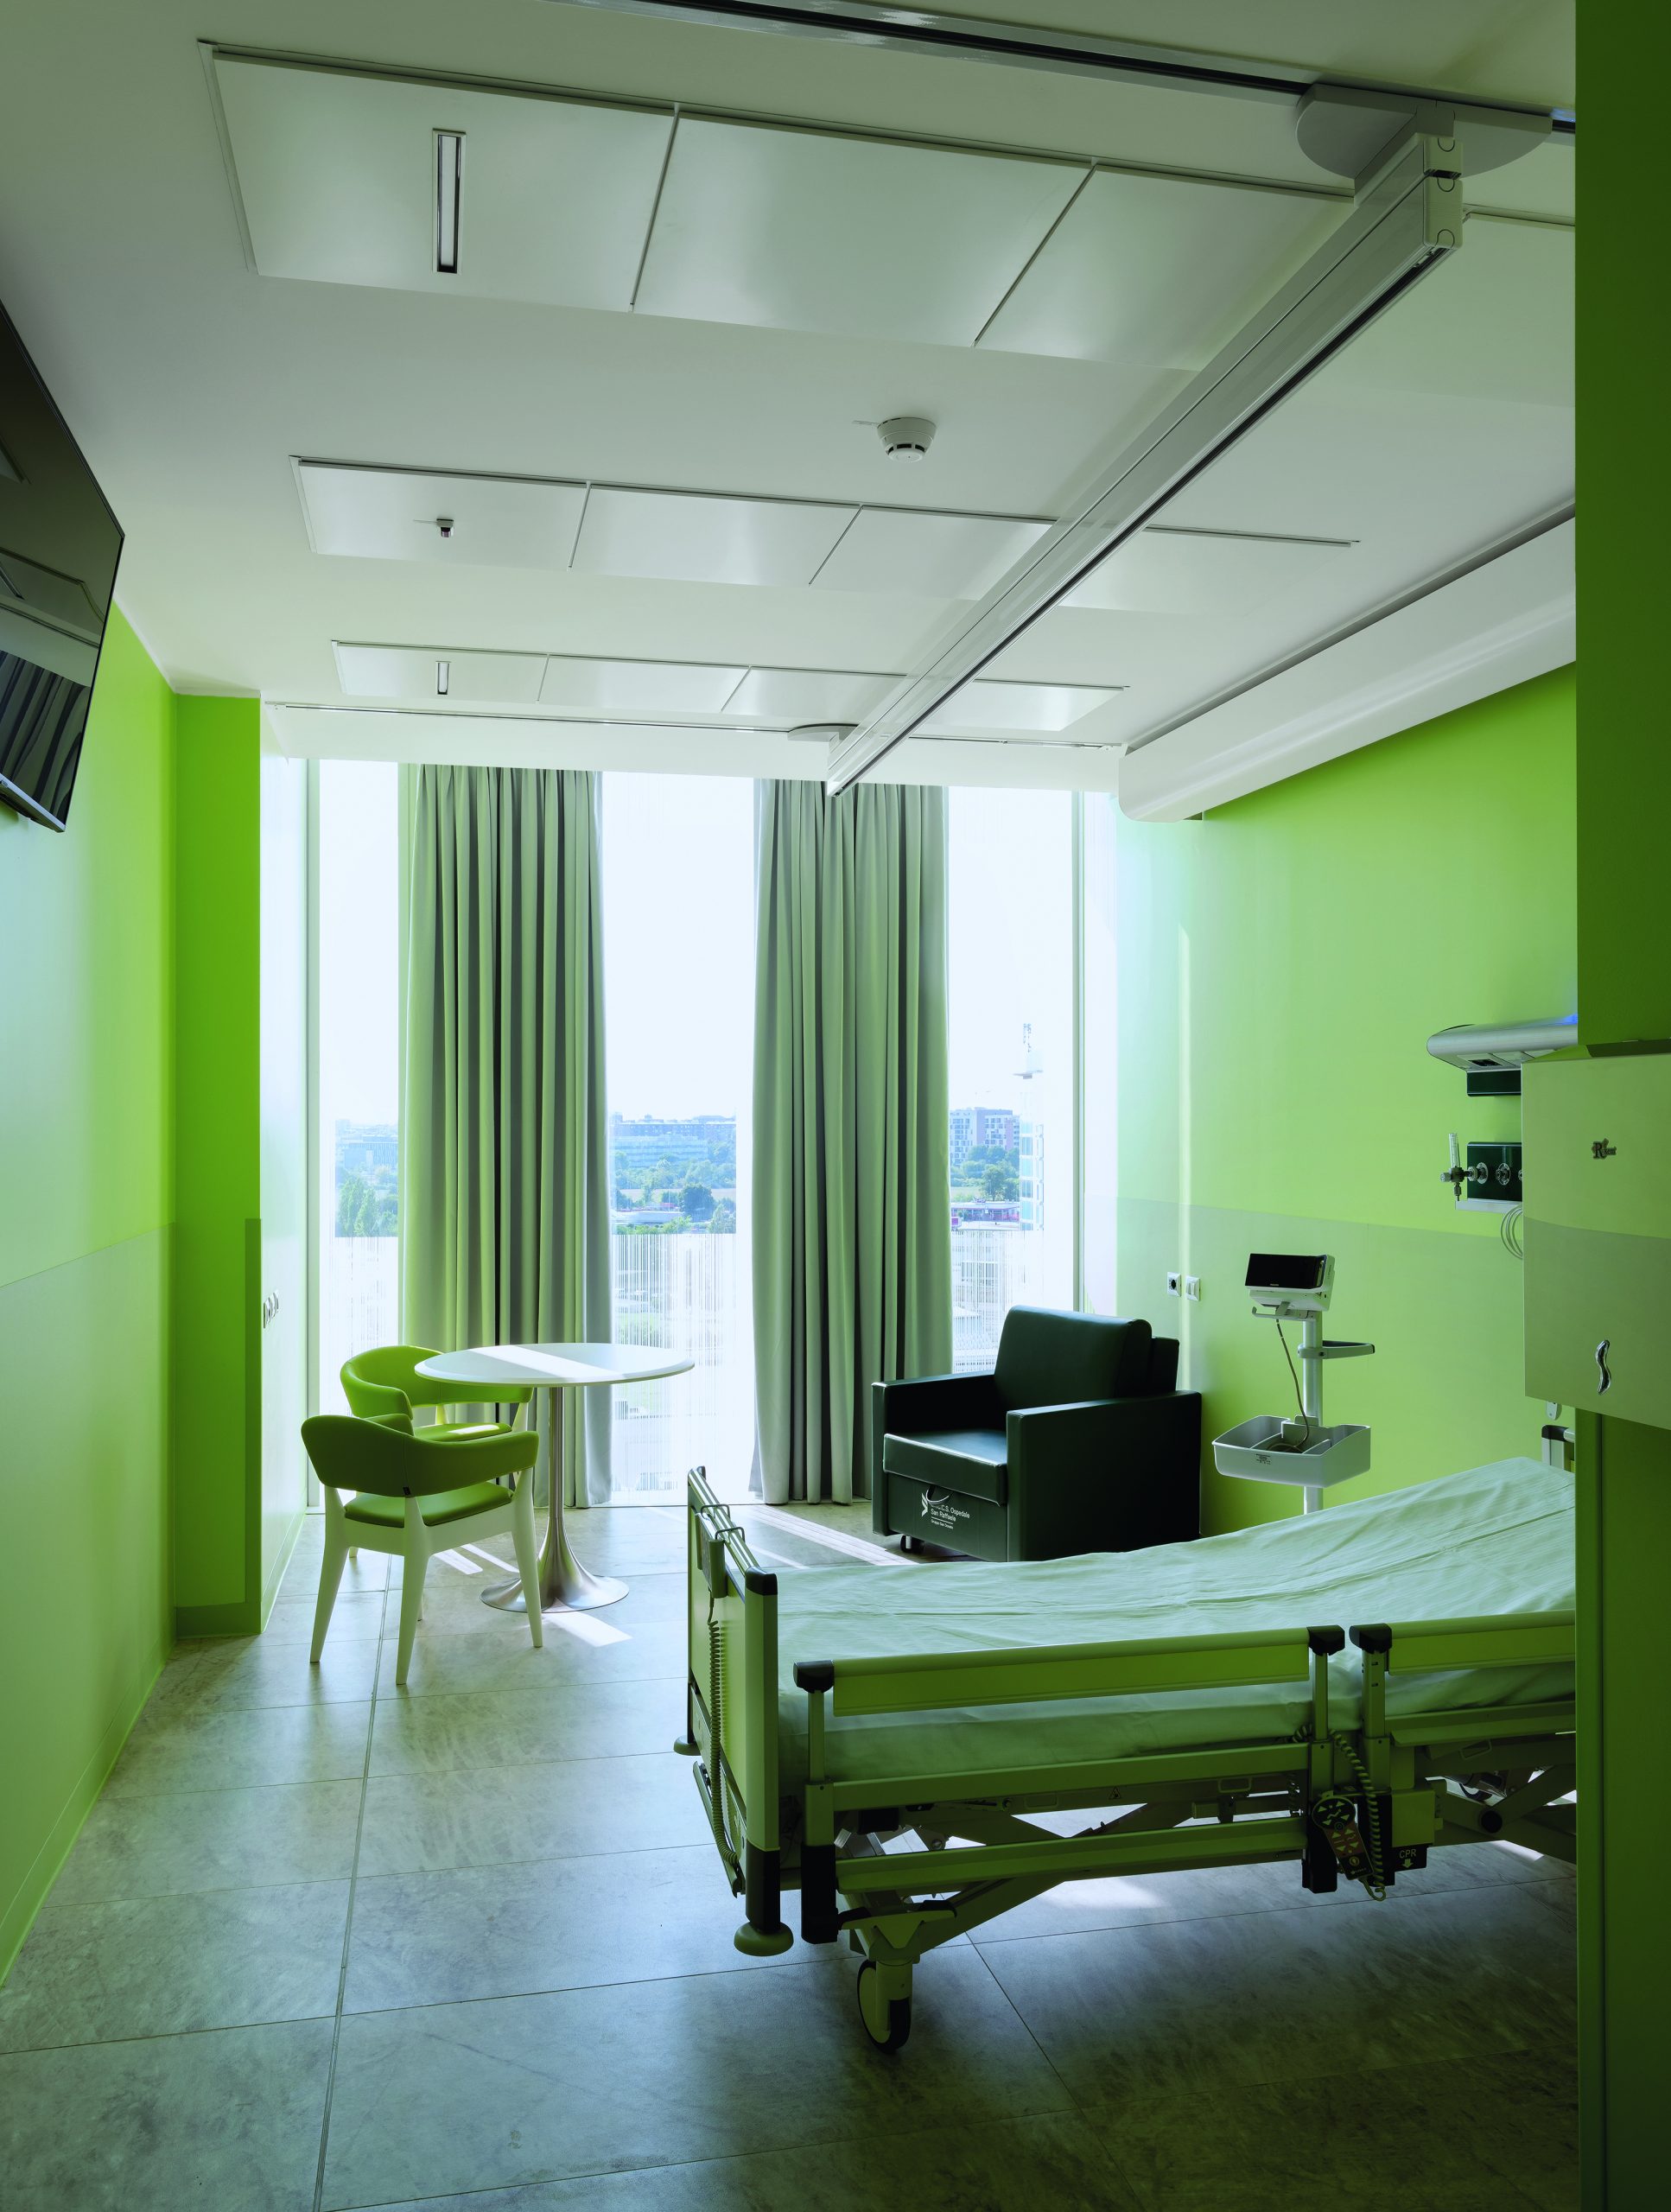 Patientenzimmer in einem Krankenhaus, Wände und Einrichtung sind hellgrün, bodentiefe Fenster lassen Licht in den Raum. Mario Cucinella Architects, Ospedale San Raffaele, Mailand, Foto: Duccio Malagamba